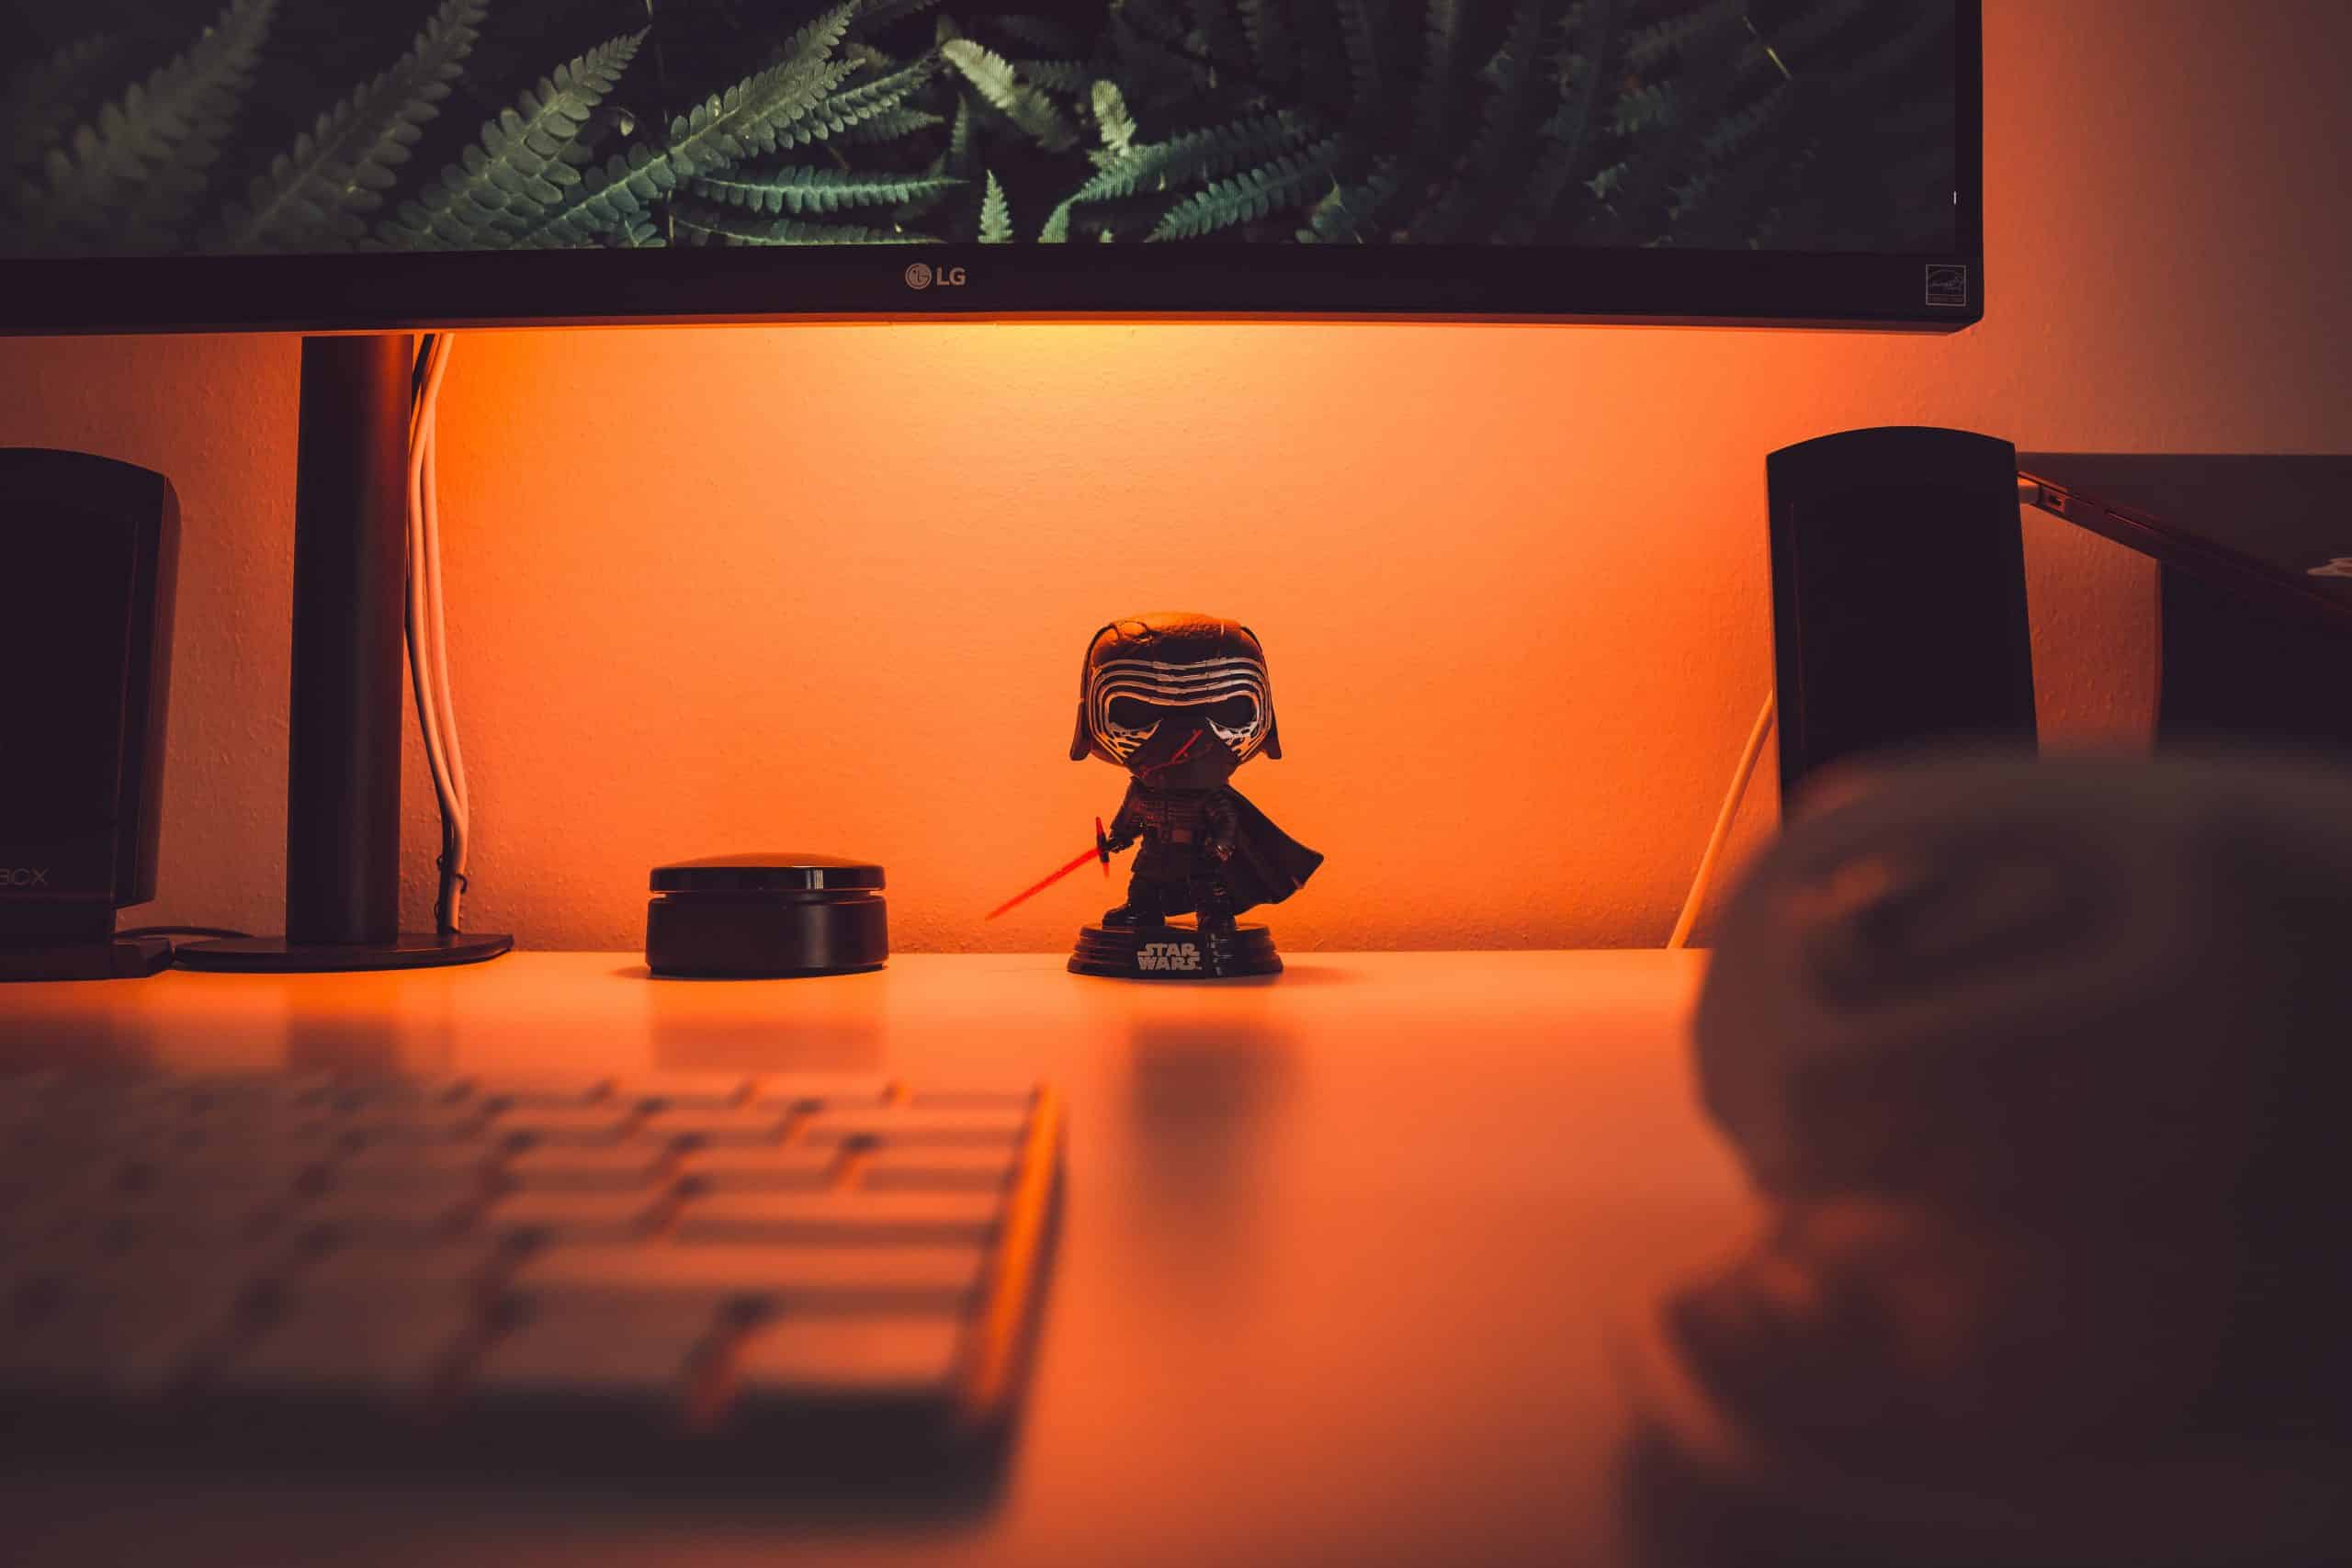 Aperçu d'une figurine devant un ordinateur.